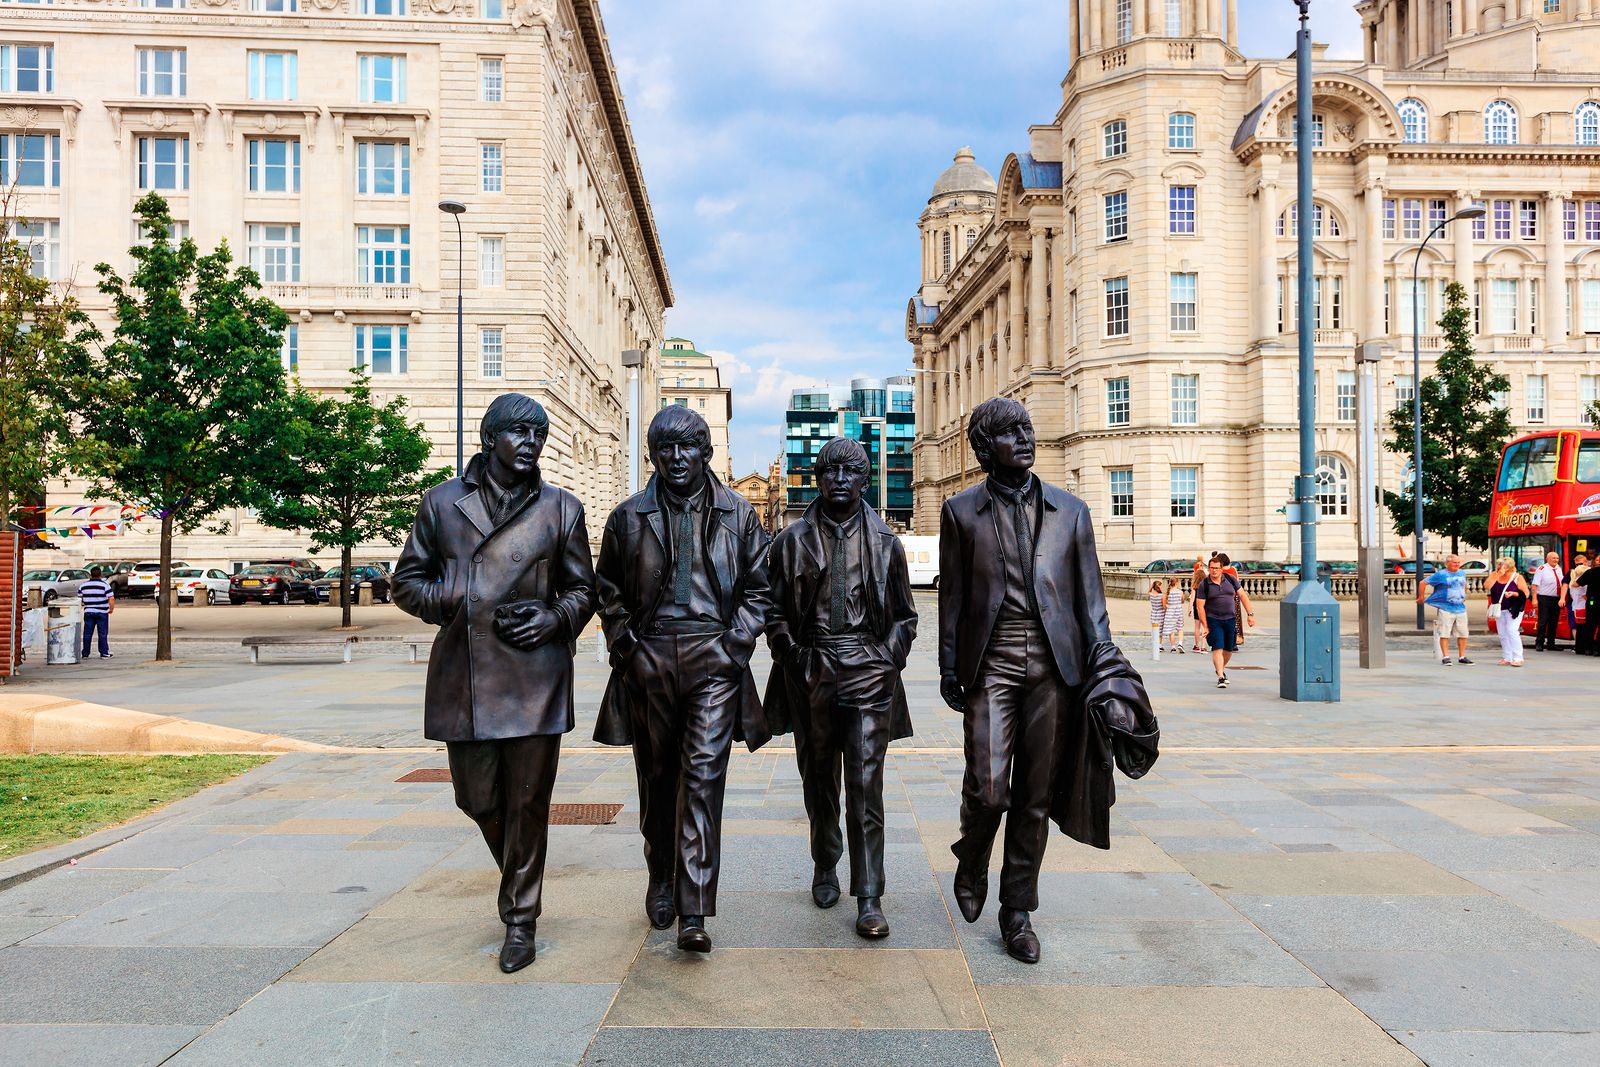 Recorre Liverpool con The Beatles: lugares más emblemáticos